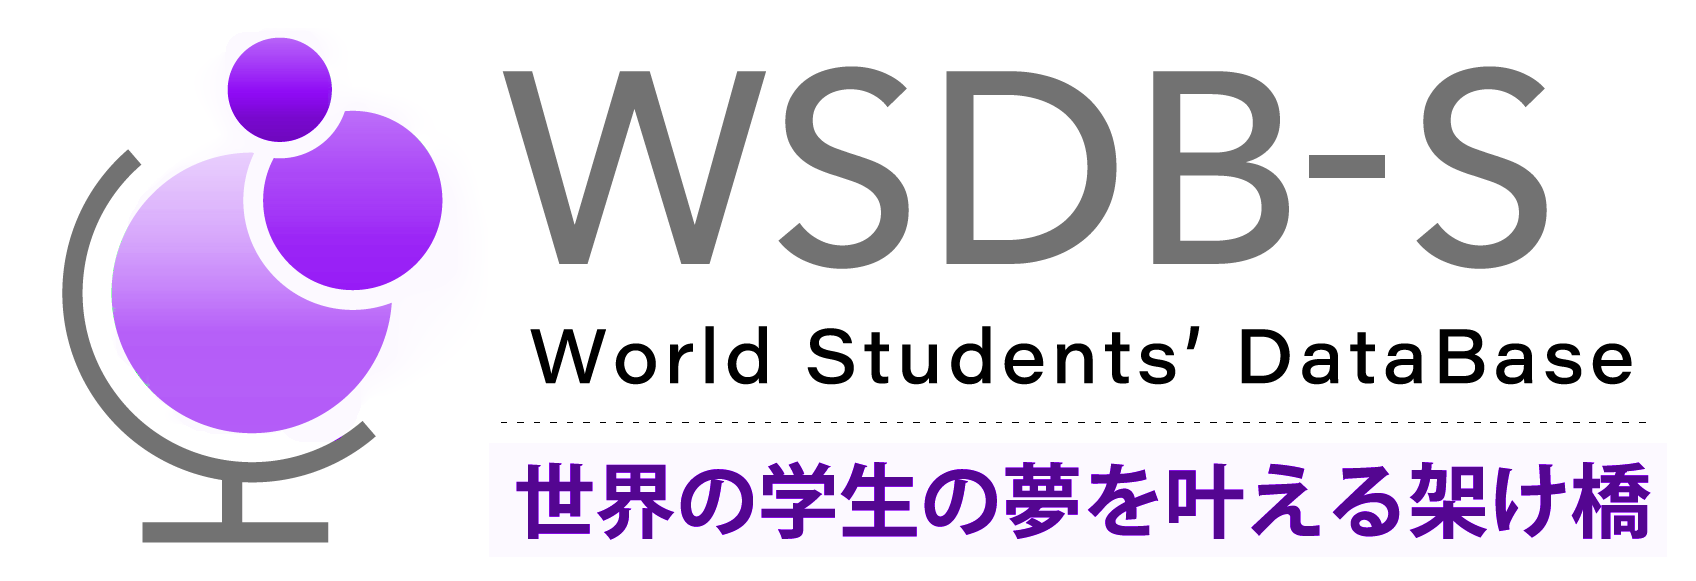 留学生の在留資格申請ならWSDB-S